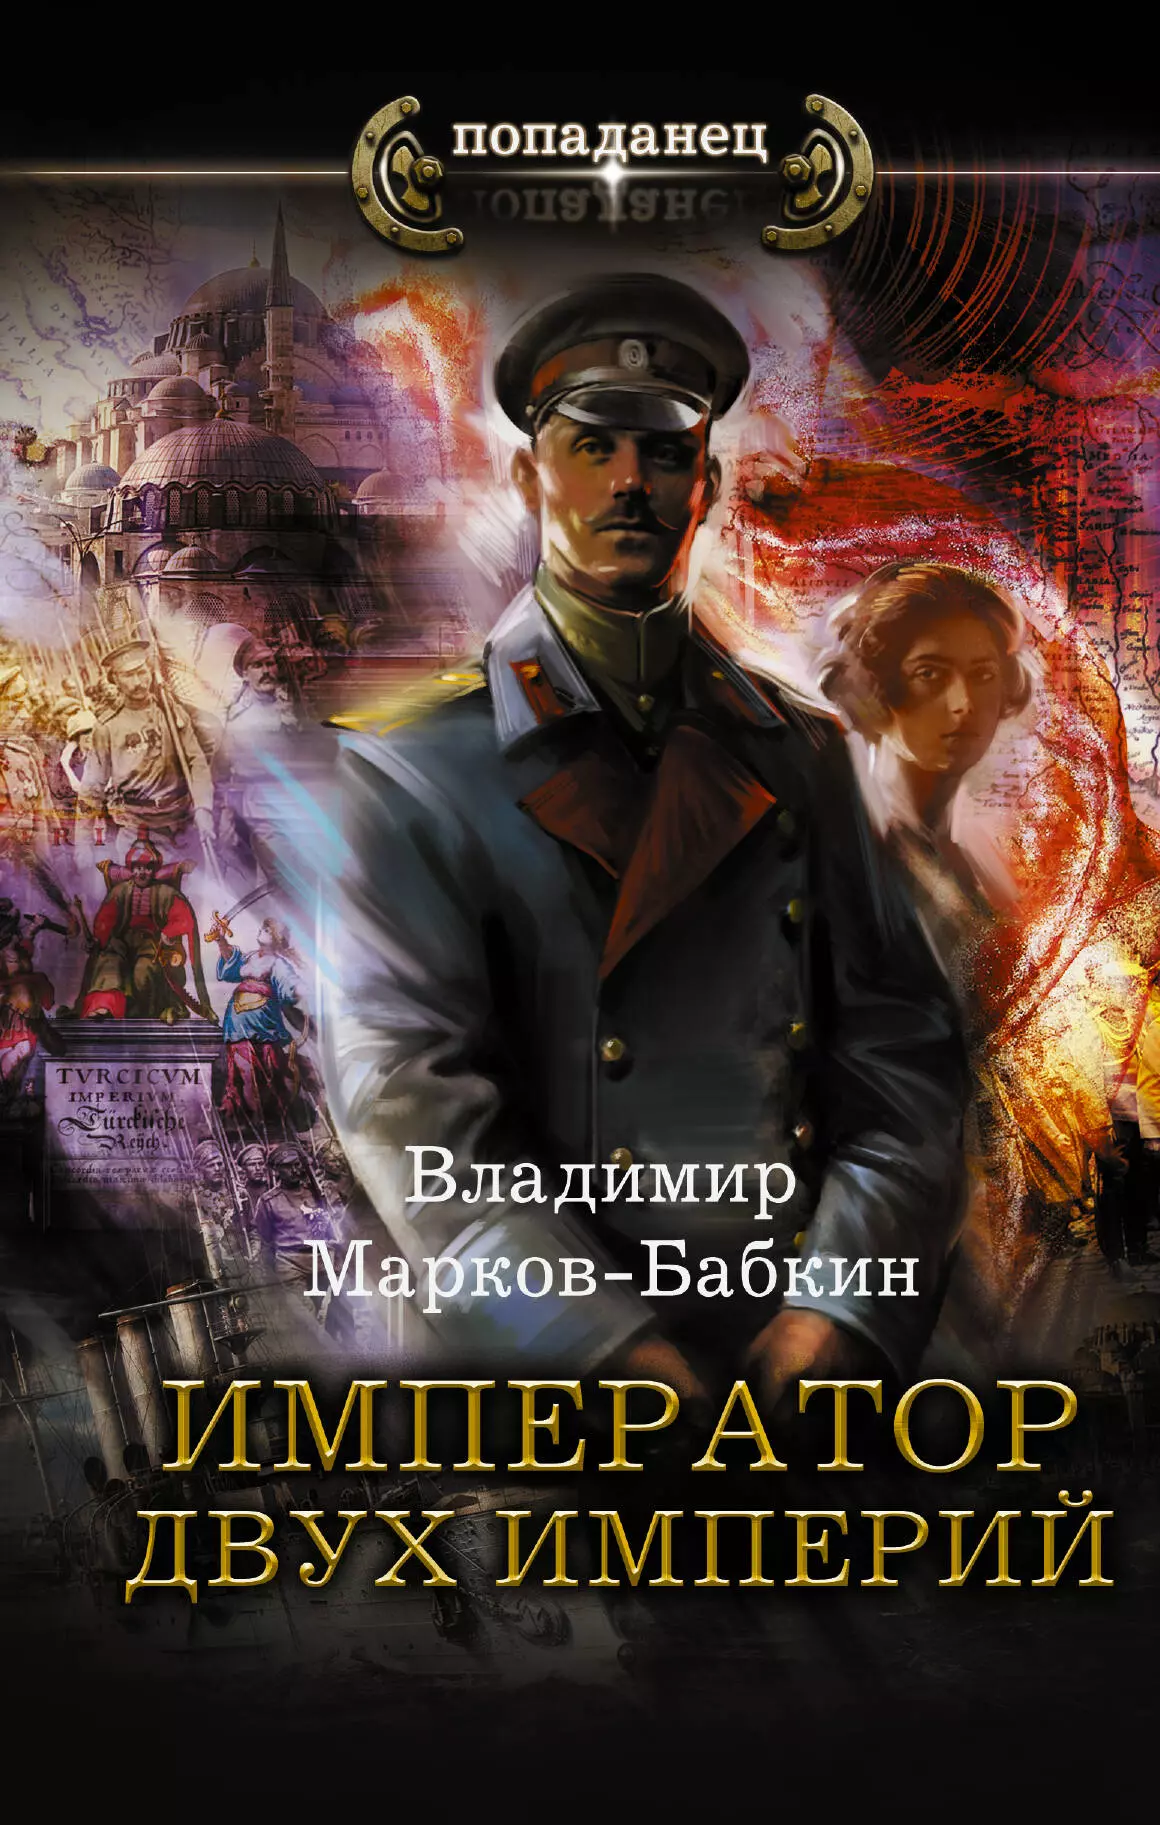 Книга про императора. Марков-Бабкин Император единства.